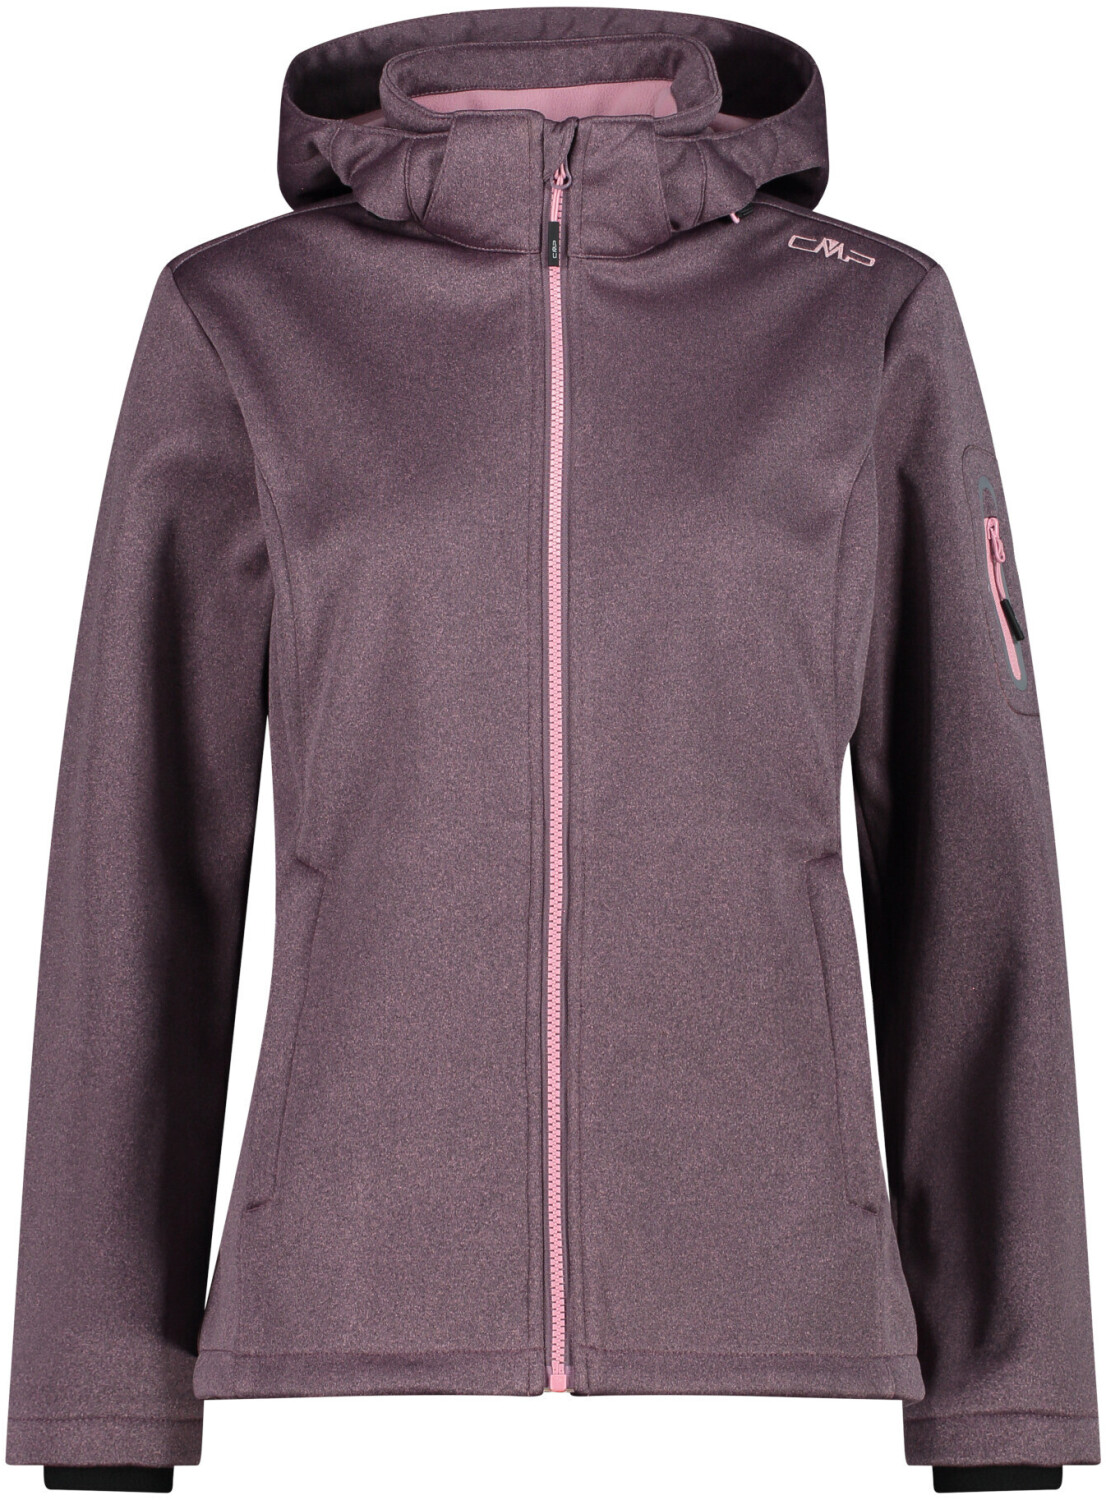 CMP Woman Jacket Zip Hood (39A5006M) plum mel. ab 45,50 € | Preisvergleich  bei